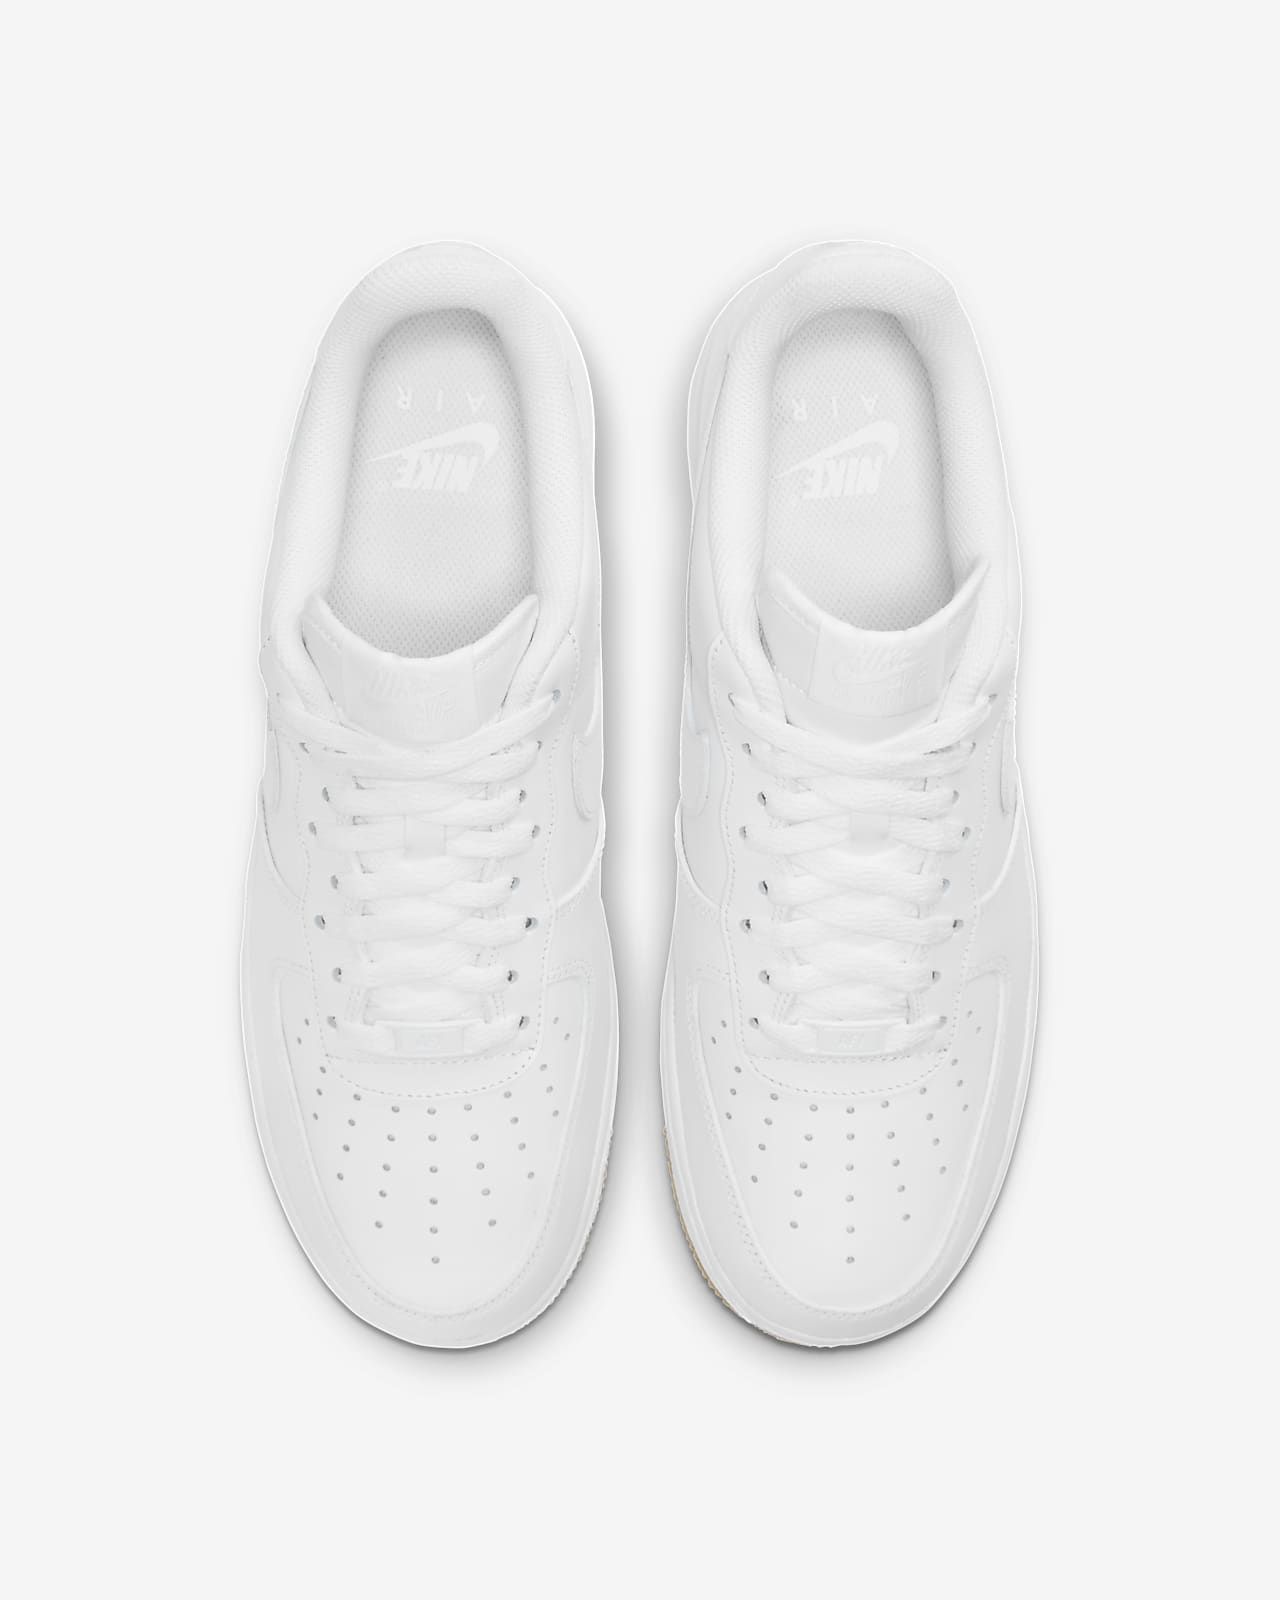 af1 shoes white